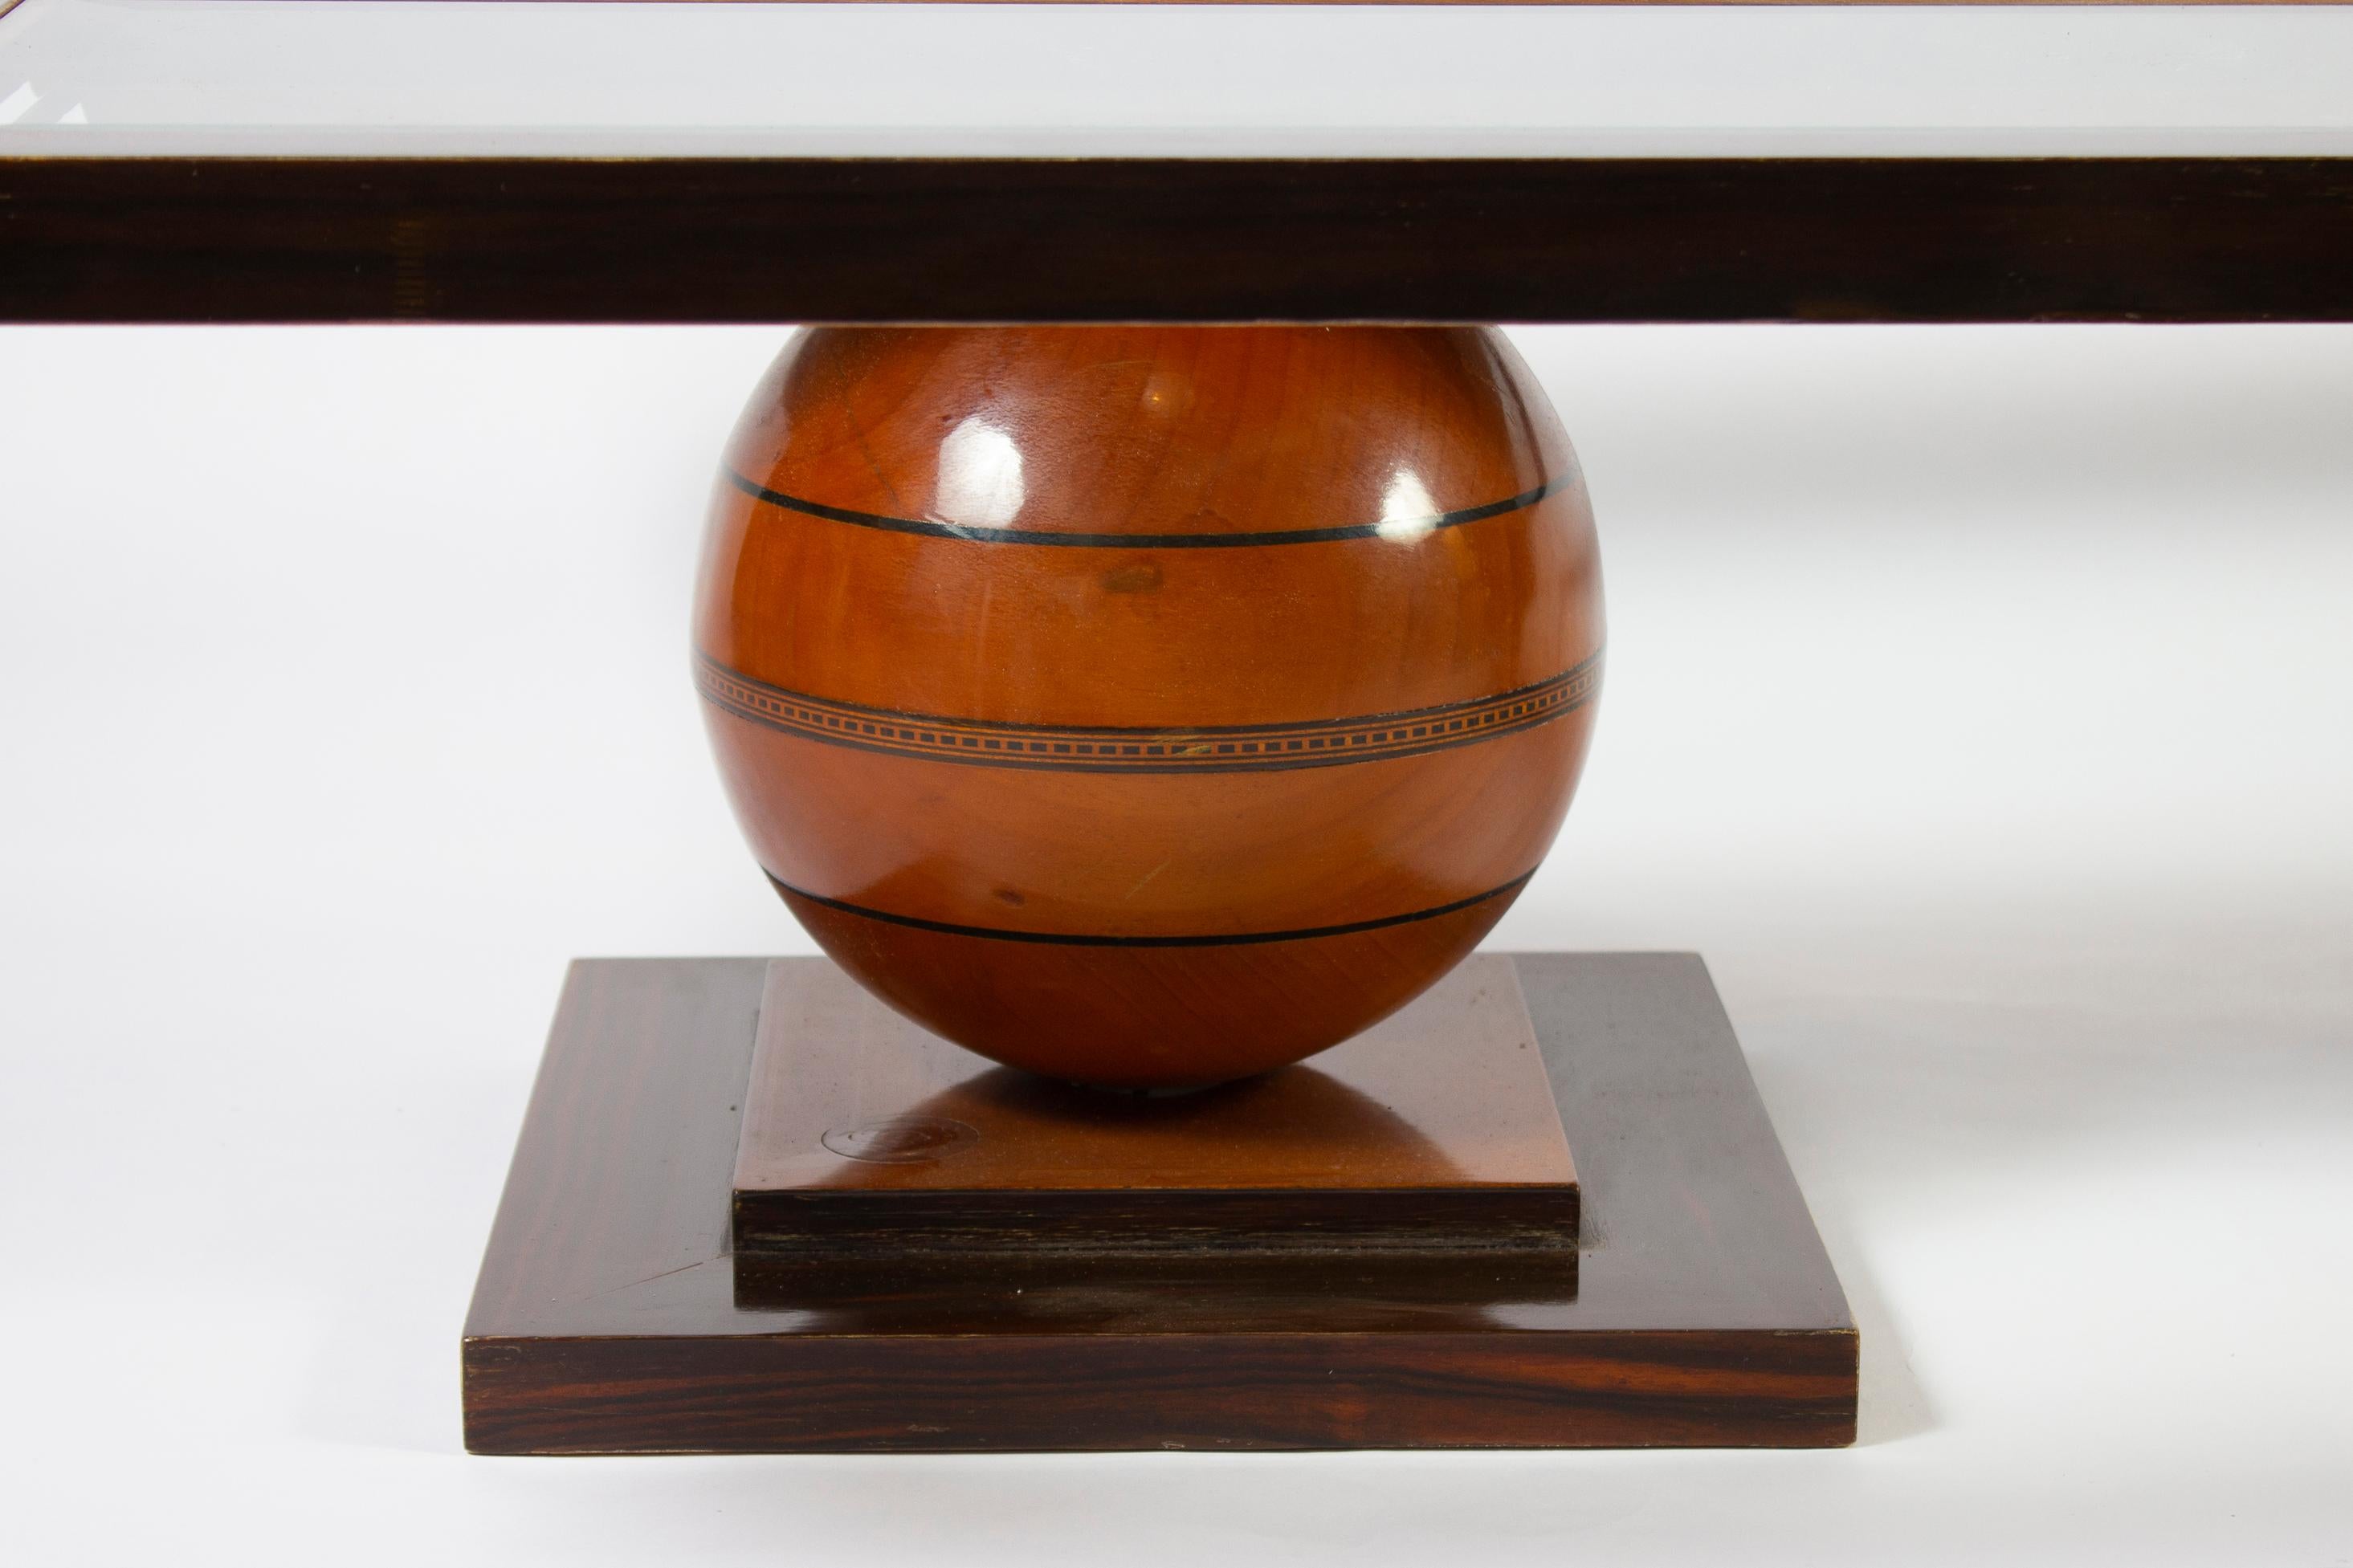 Eleganter Art Deco Couchtisch in verschiedenen Holzarten, verziert mit kostbaren Perlmutteinsätzen.
Die Basis signiert C. 
 Ausgezeichneter Vintage-Zustand
 